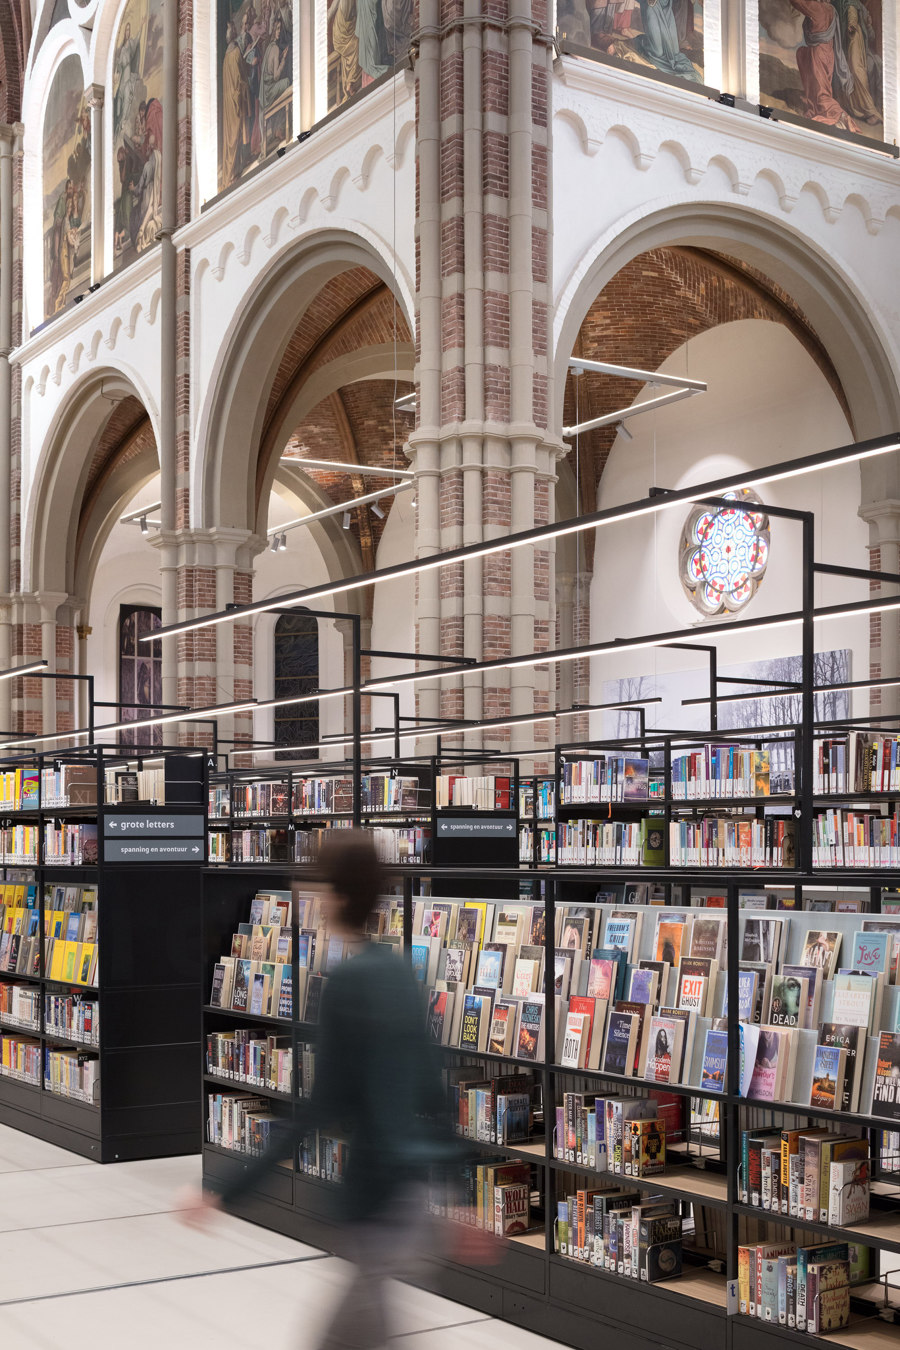 Ein neues Kapitel: 6 Bibliotheken zeigen ihre besten Seiten | Aktuelles